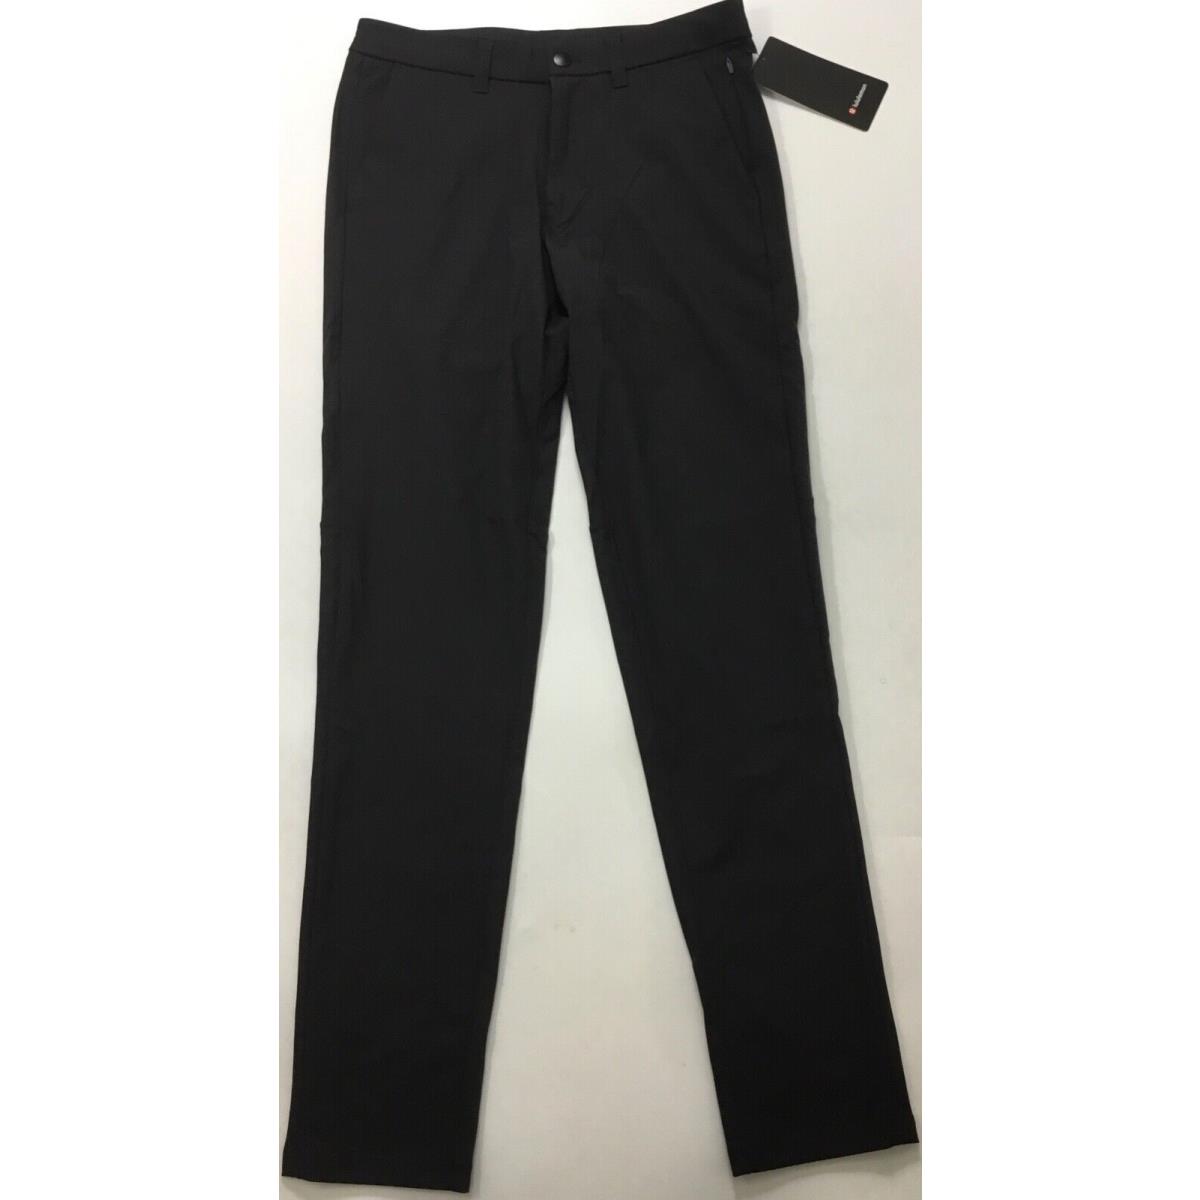 Lululemon Men s Pants Commission Pant Slim 34 L LM5974S Black Size 31